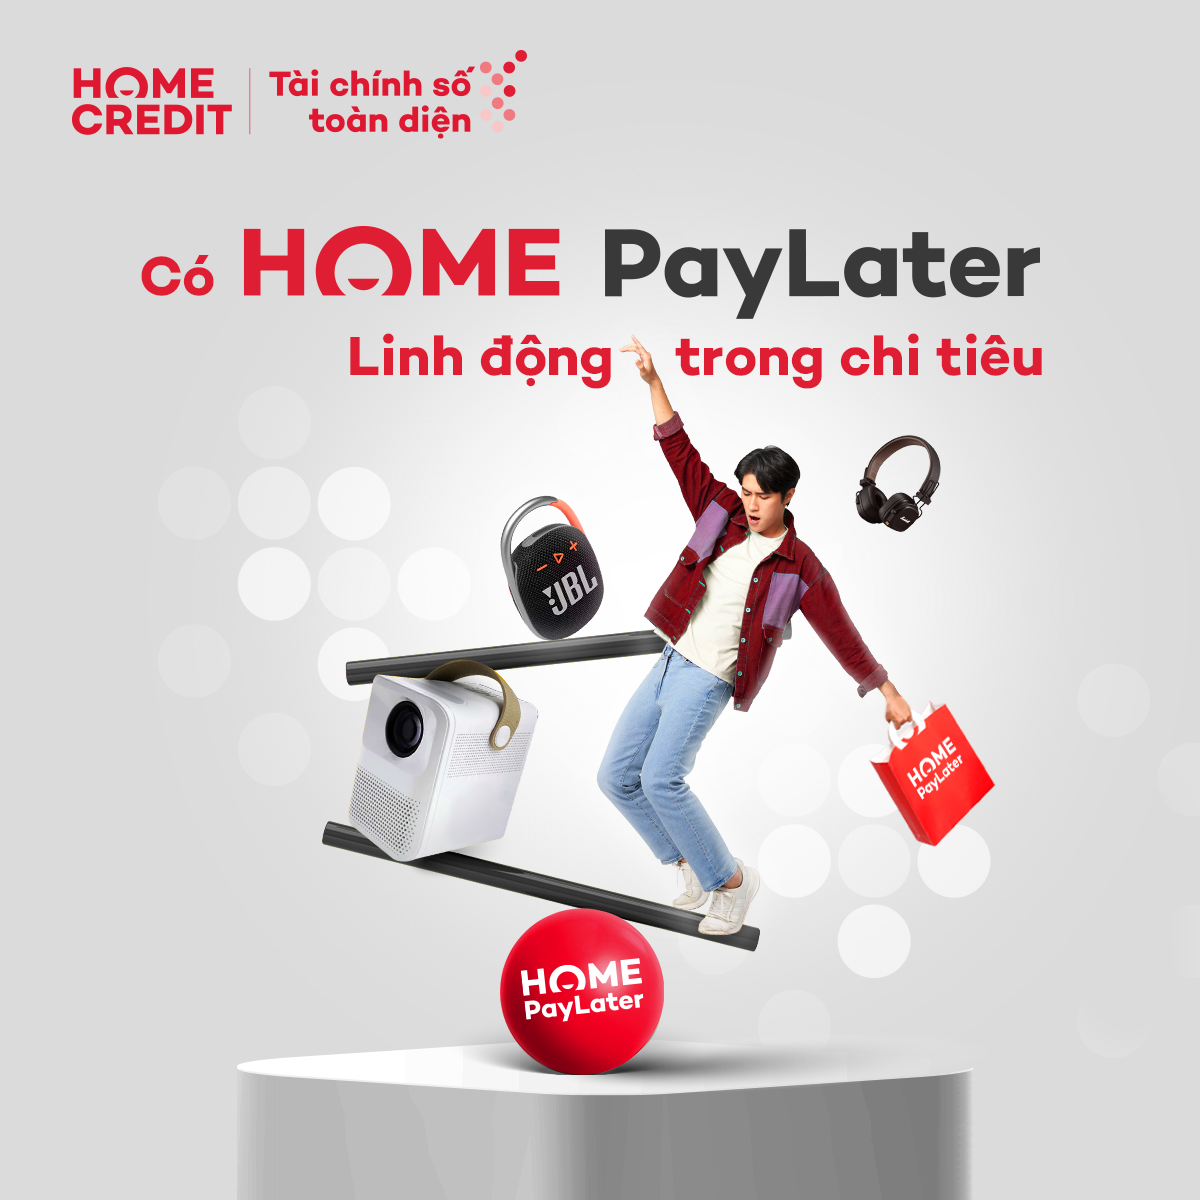 Home PayLater - Trải nghiệm mua sắm hiện đại và cơ hội nhận ngay khuyến mãi hot - 5